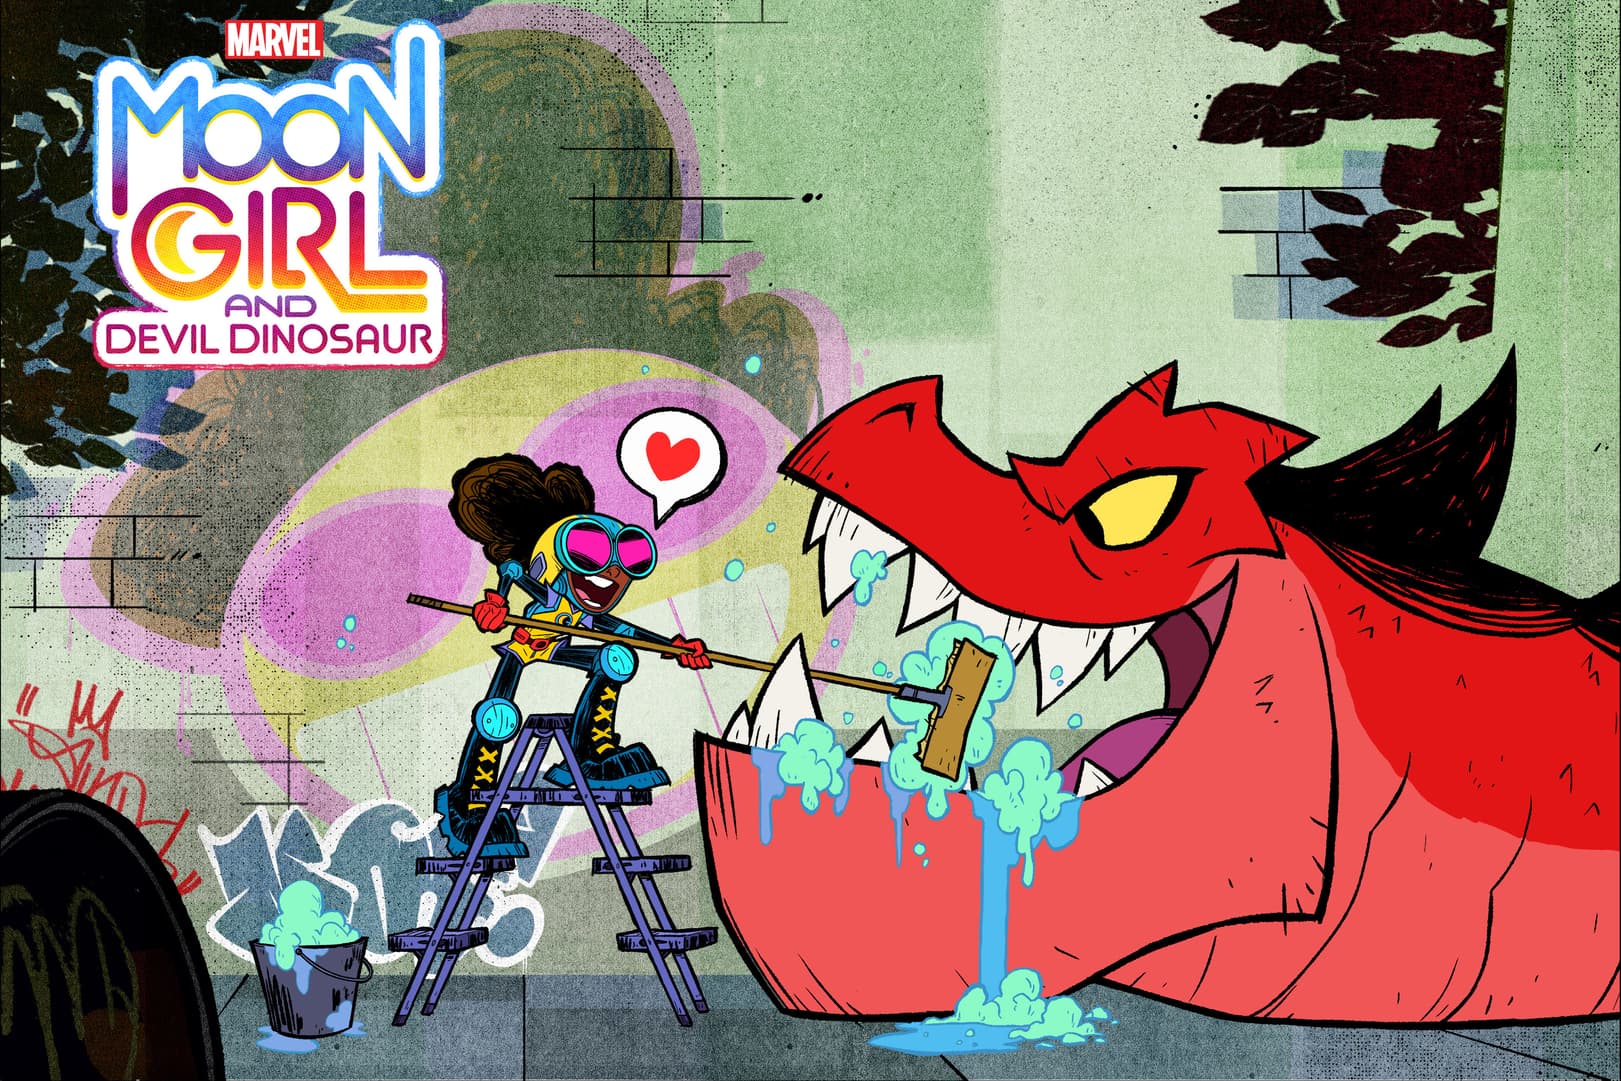 Marvel's Moon Girl And Devil Dinosaur